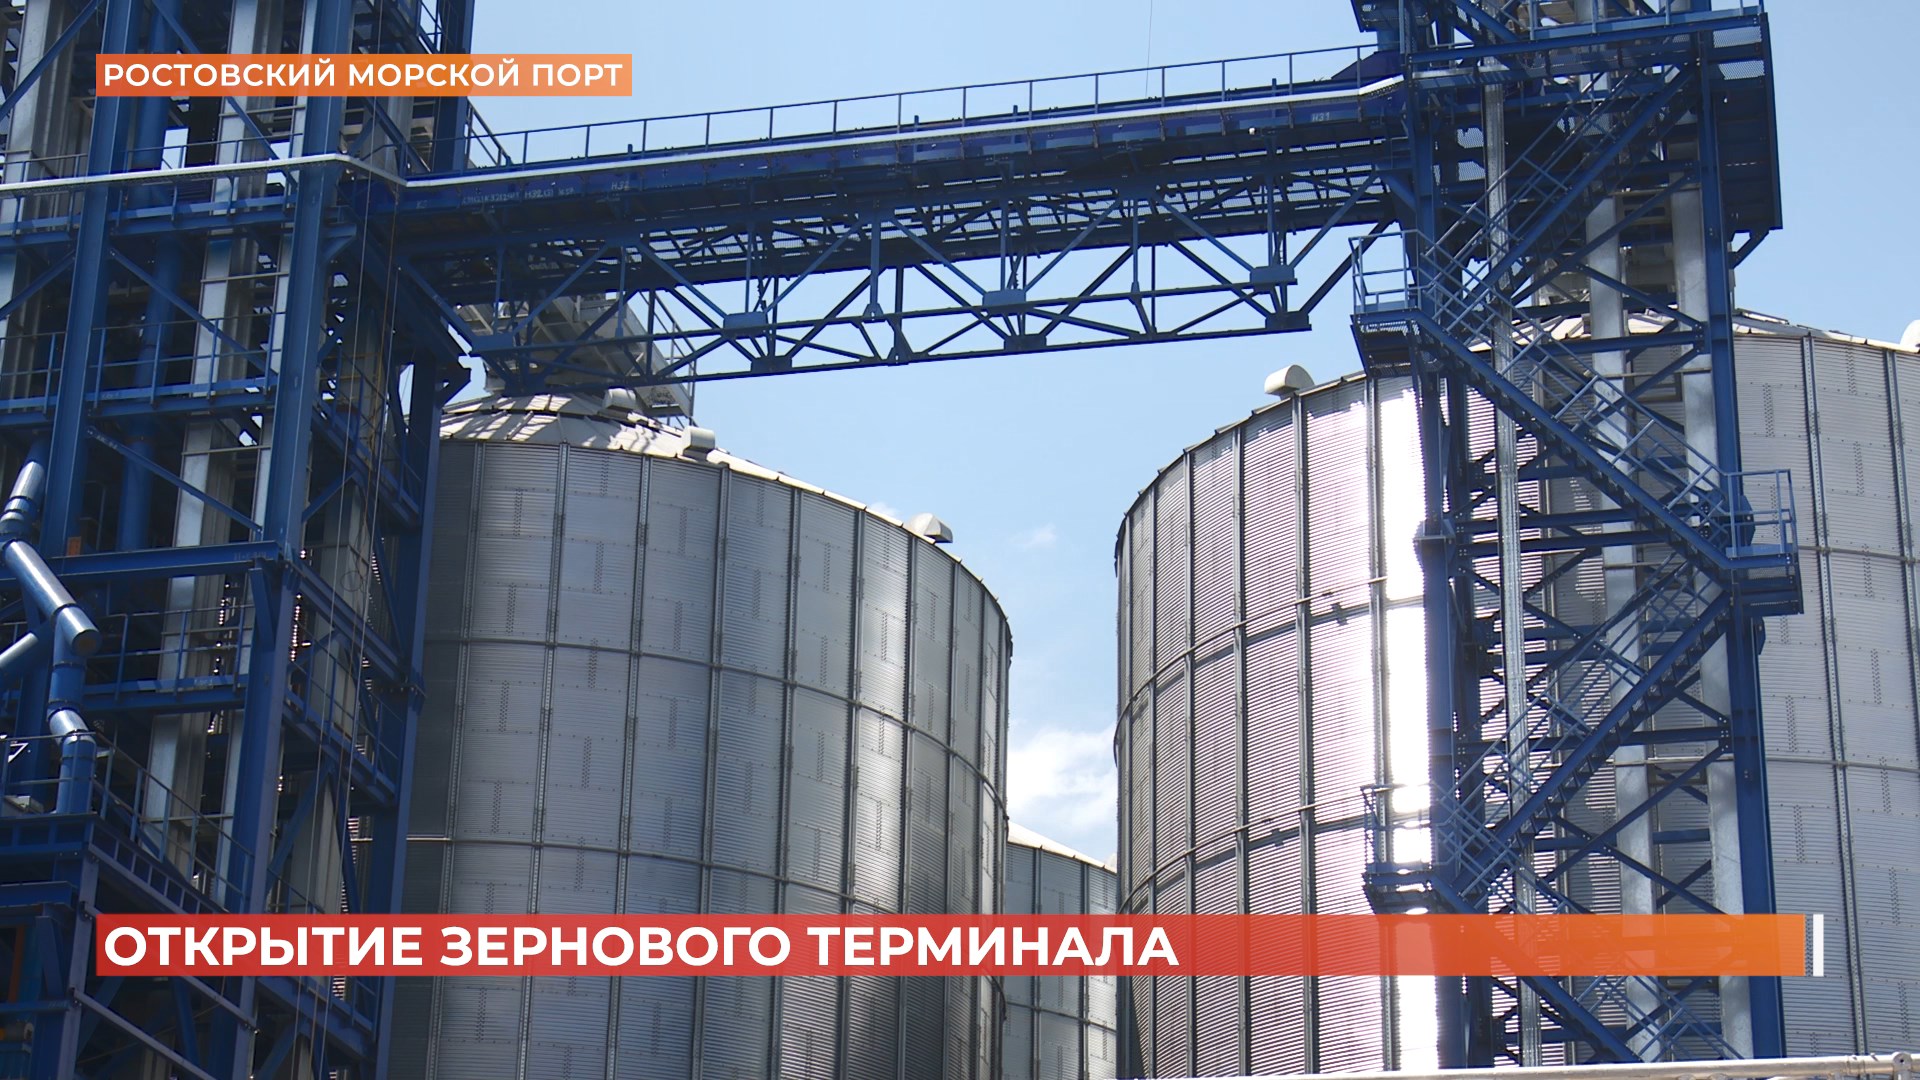 В Ростовском морском порту открылся зерновой терминал с технической годовой мощностью миллион тонн